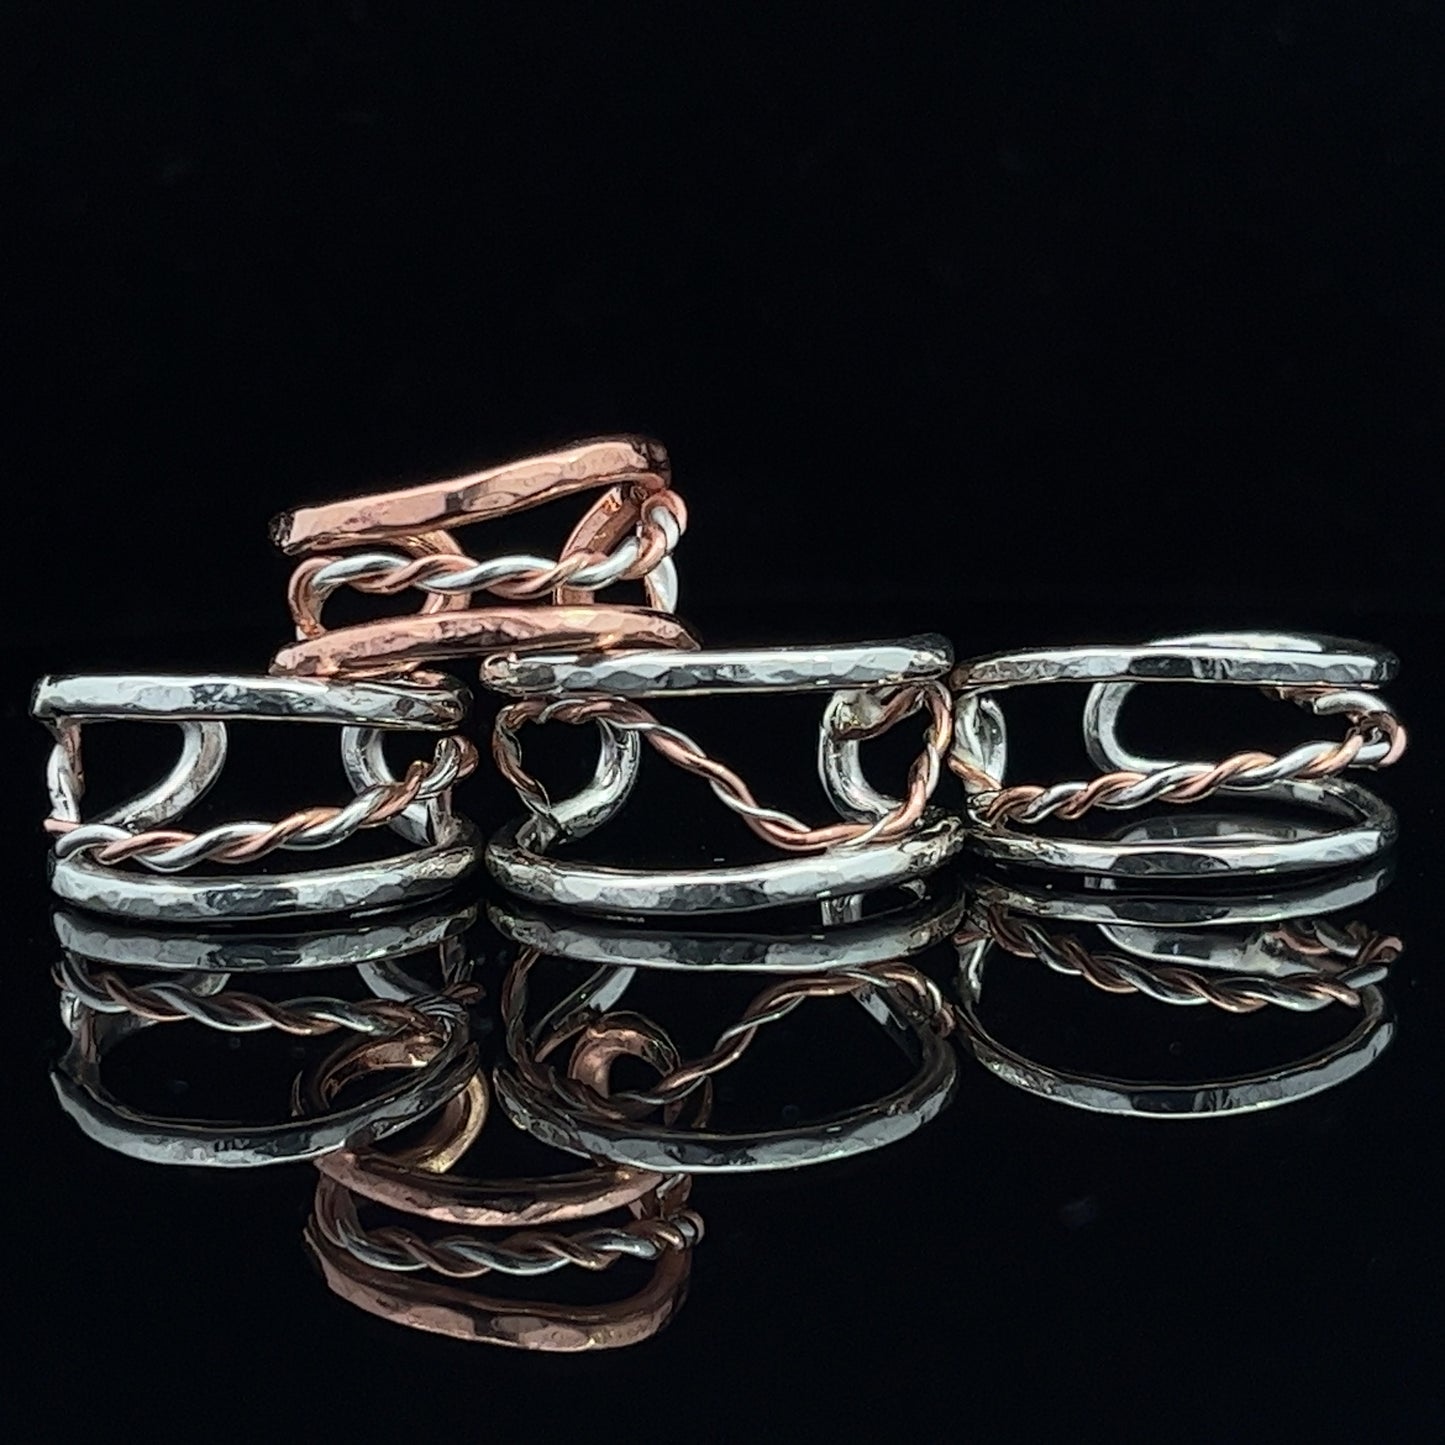 Silver & Copper Cuff Rings - small - medium